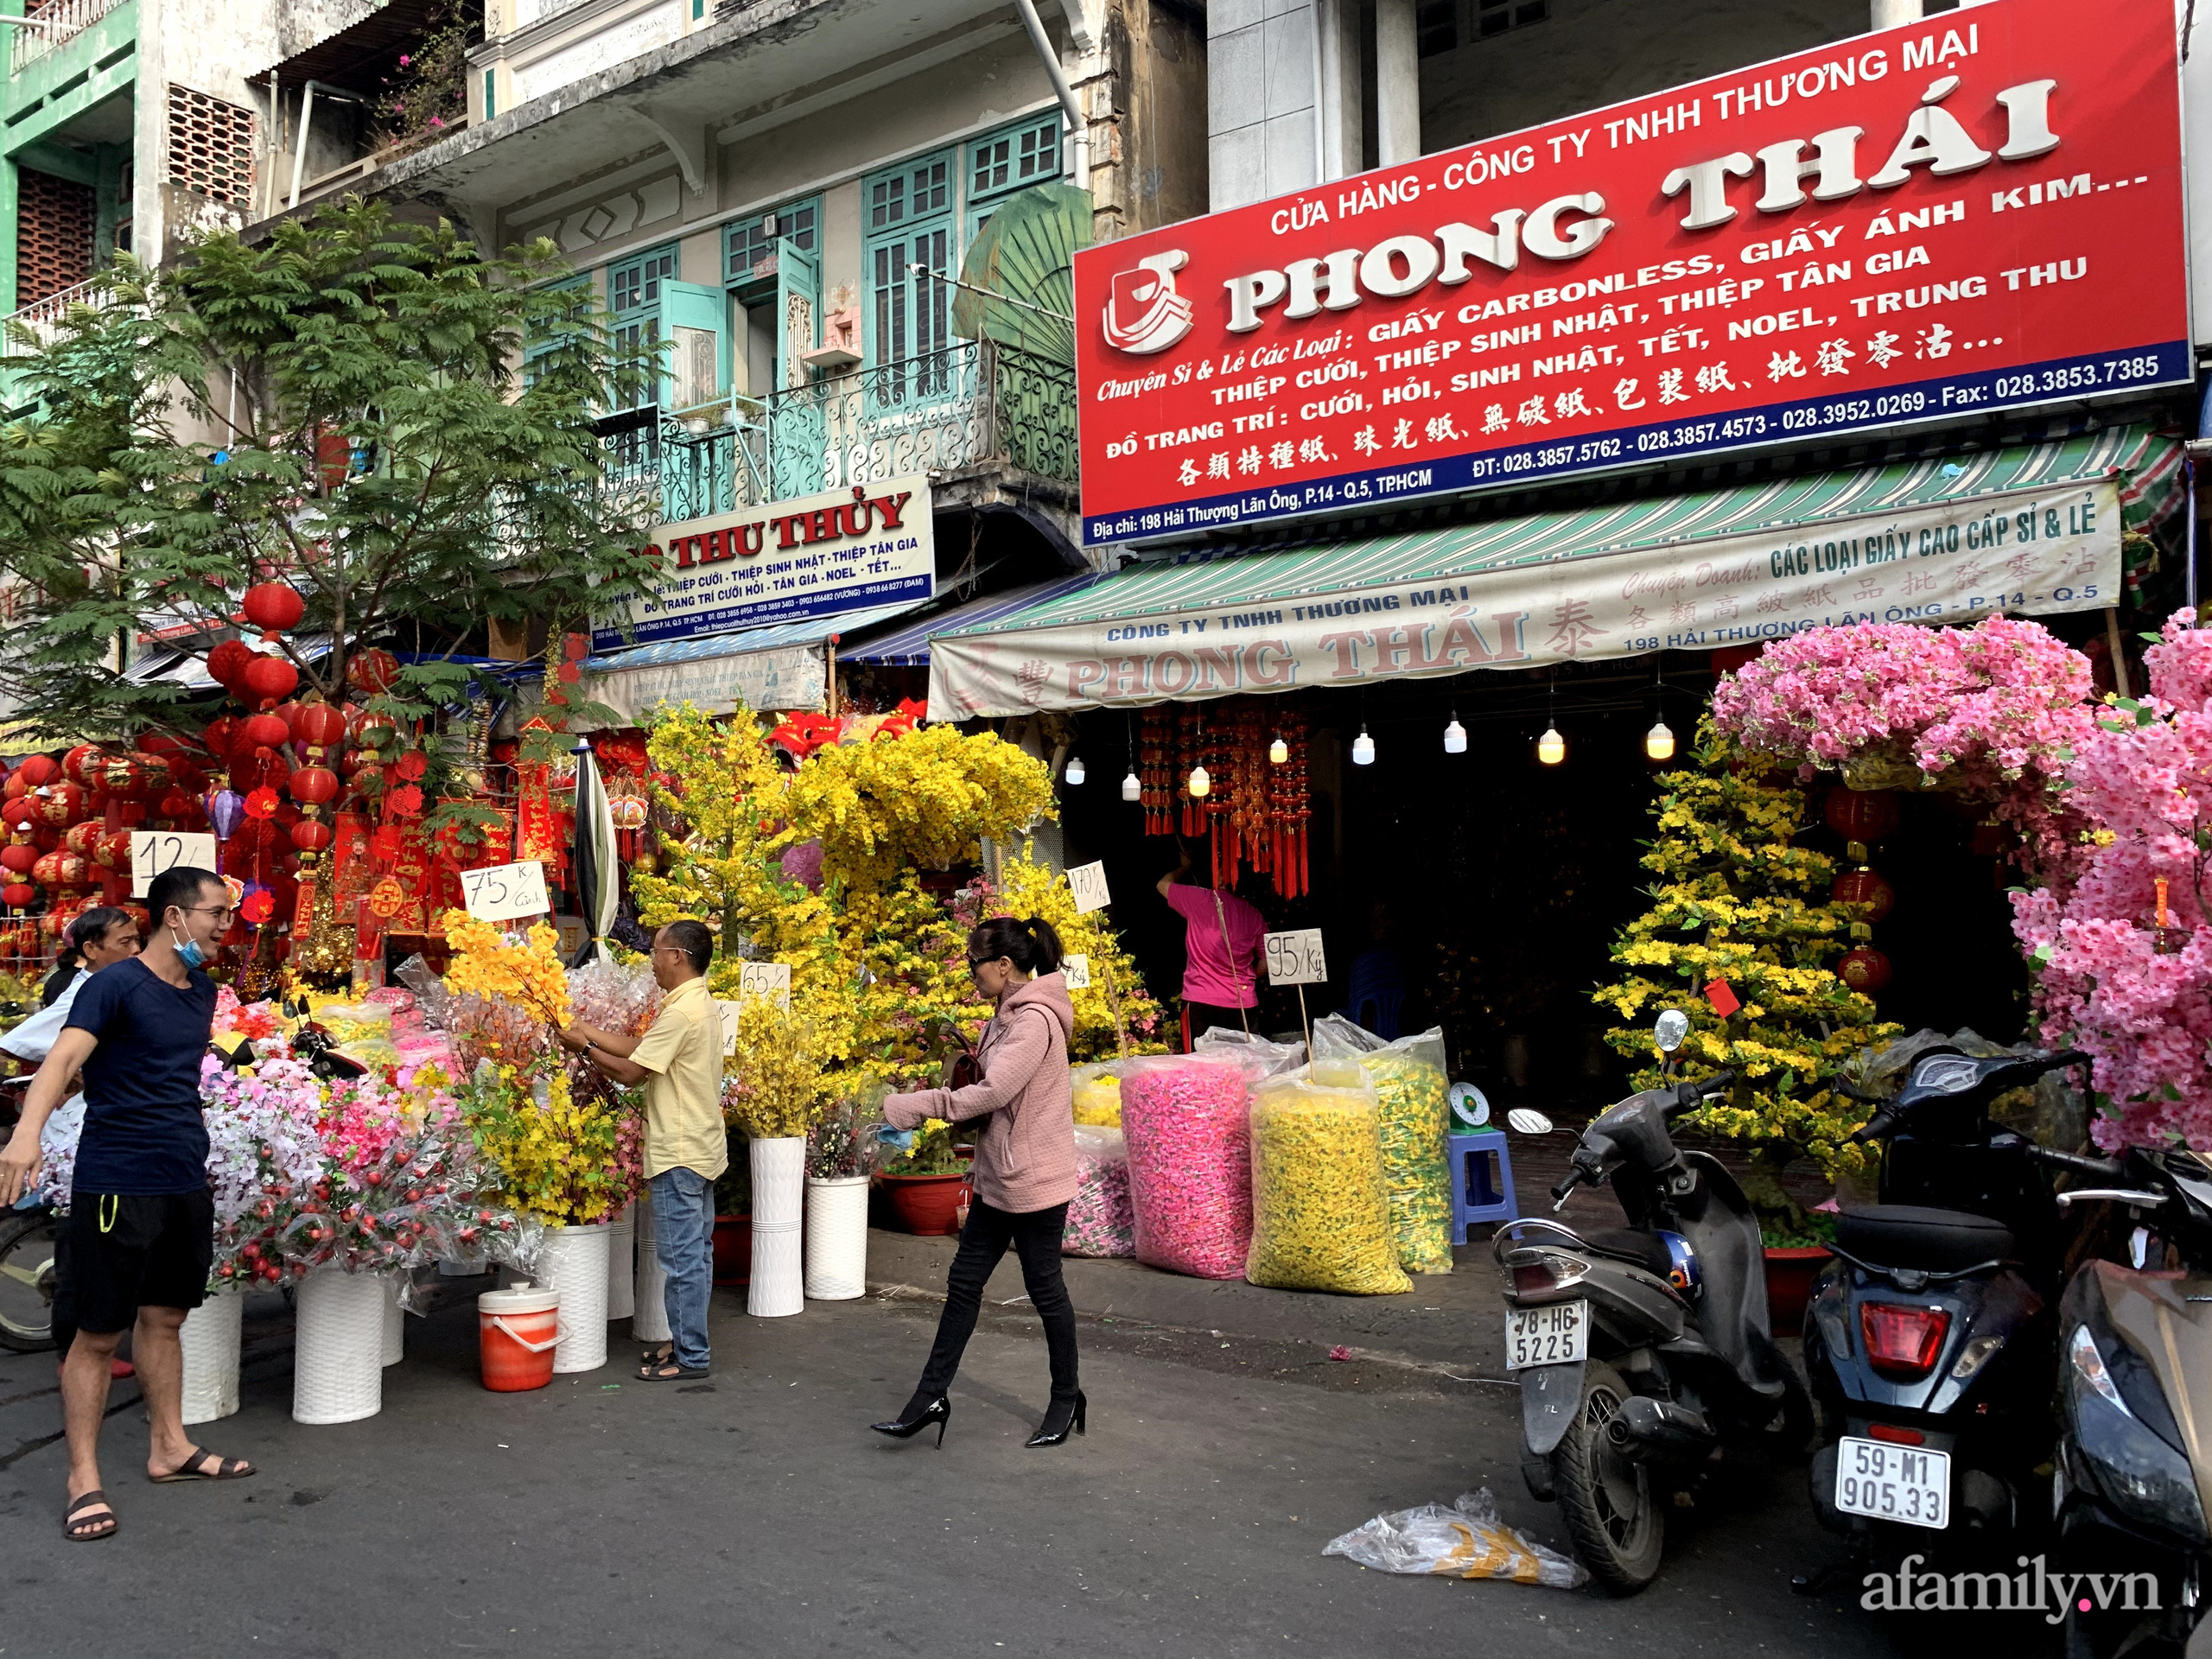 Sài Gòn: Rực rỡ sắc xuân các sản phẩm truyền thống ở phố Hải Thượng Lãn Ông cận Tết Tân Sửu 2021 - Ảnh 3.